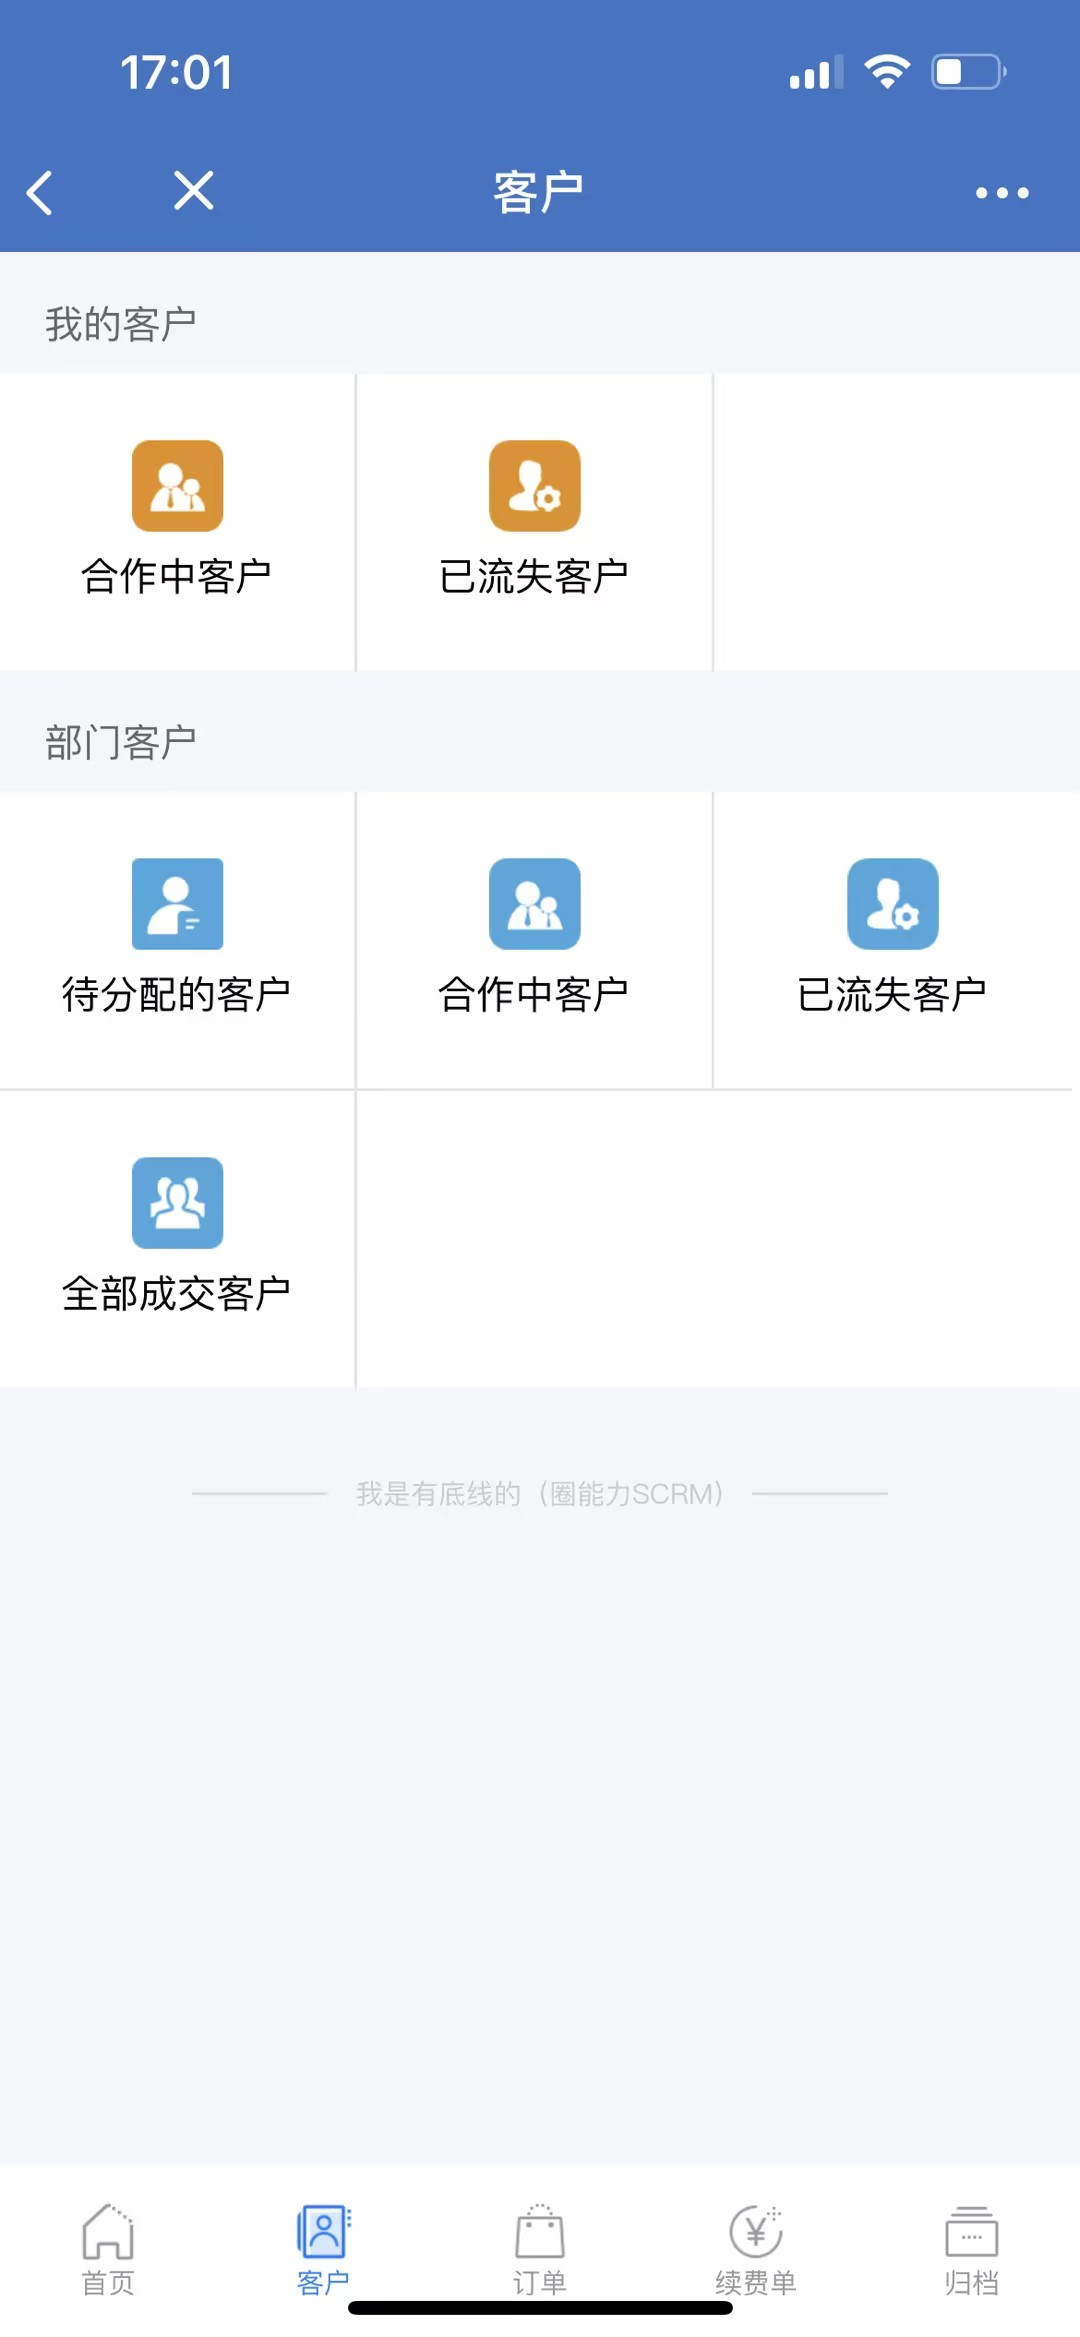 深圳市五轴科技有限公司